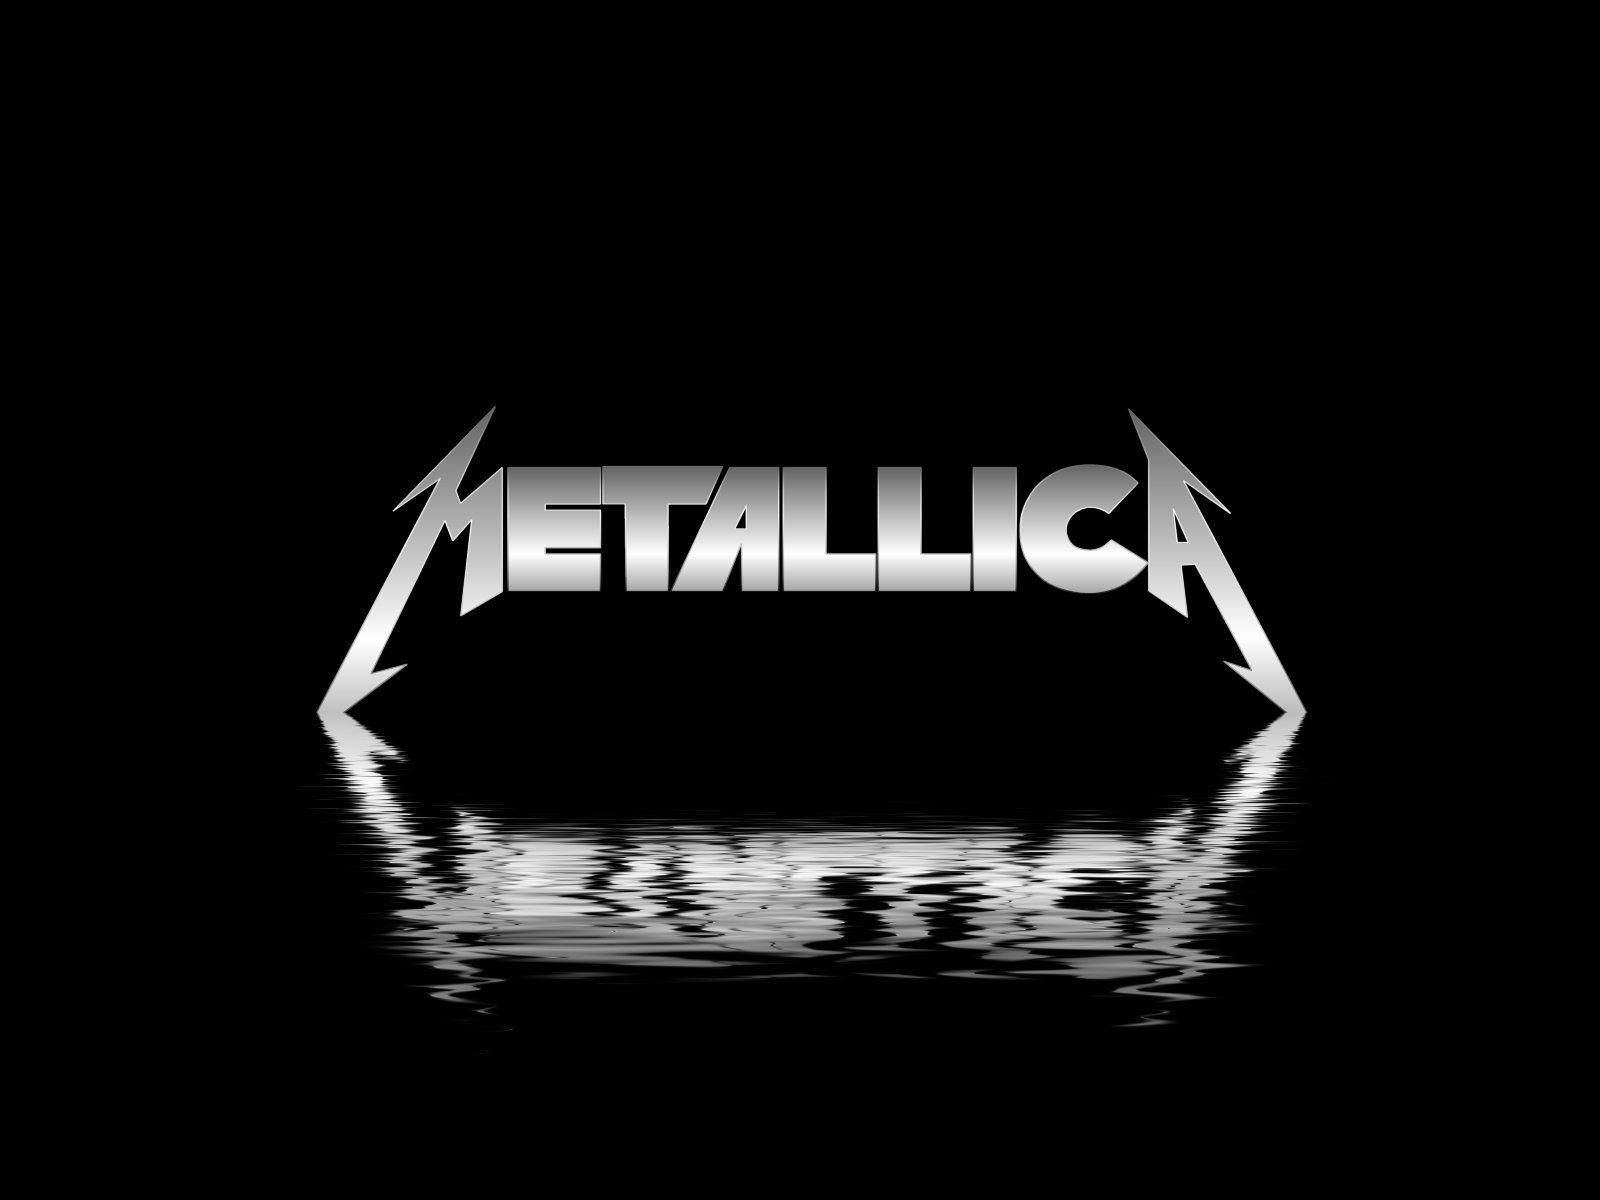 Nâng cao trải nghiệm của bạn trên máy tính với những thiết kế nền độc đáo và ấn tượng từ Metallica Desktop Backgrounds. Bạn sẽ không thể rời mắt khỏi màn hình khi được trải nghiệm những hình ảnh độc đáo từ ban nhạc rock huyền thoại này!